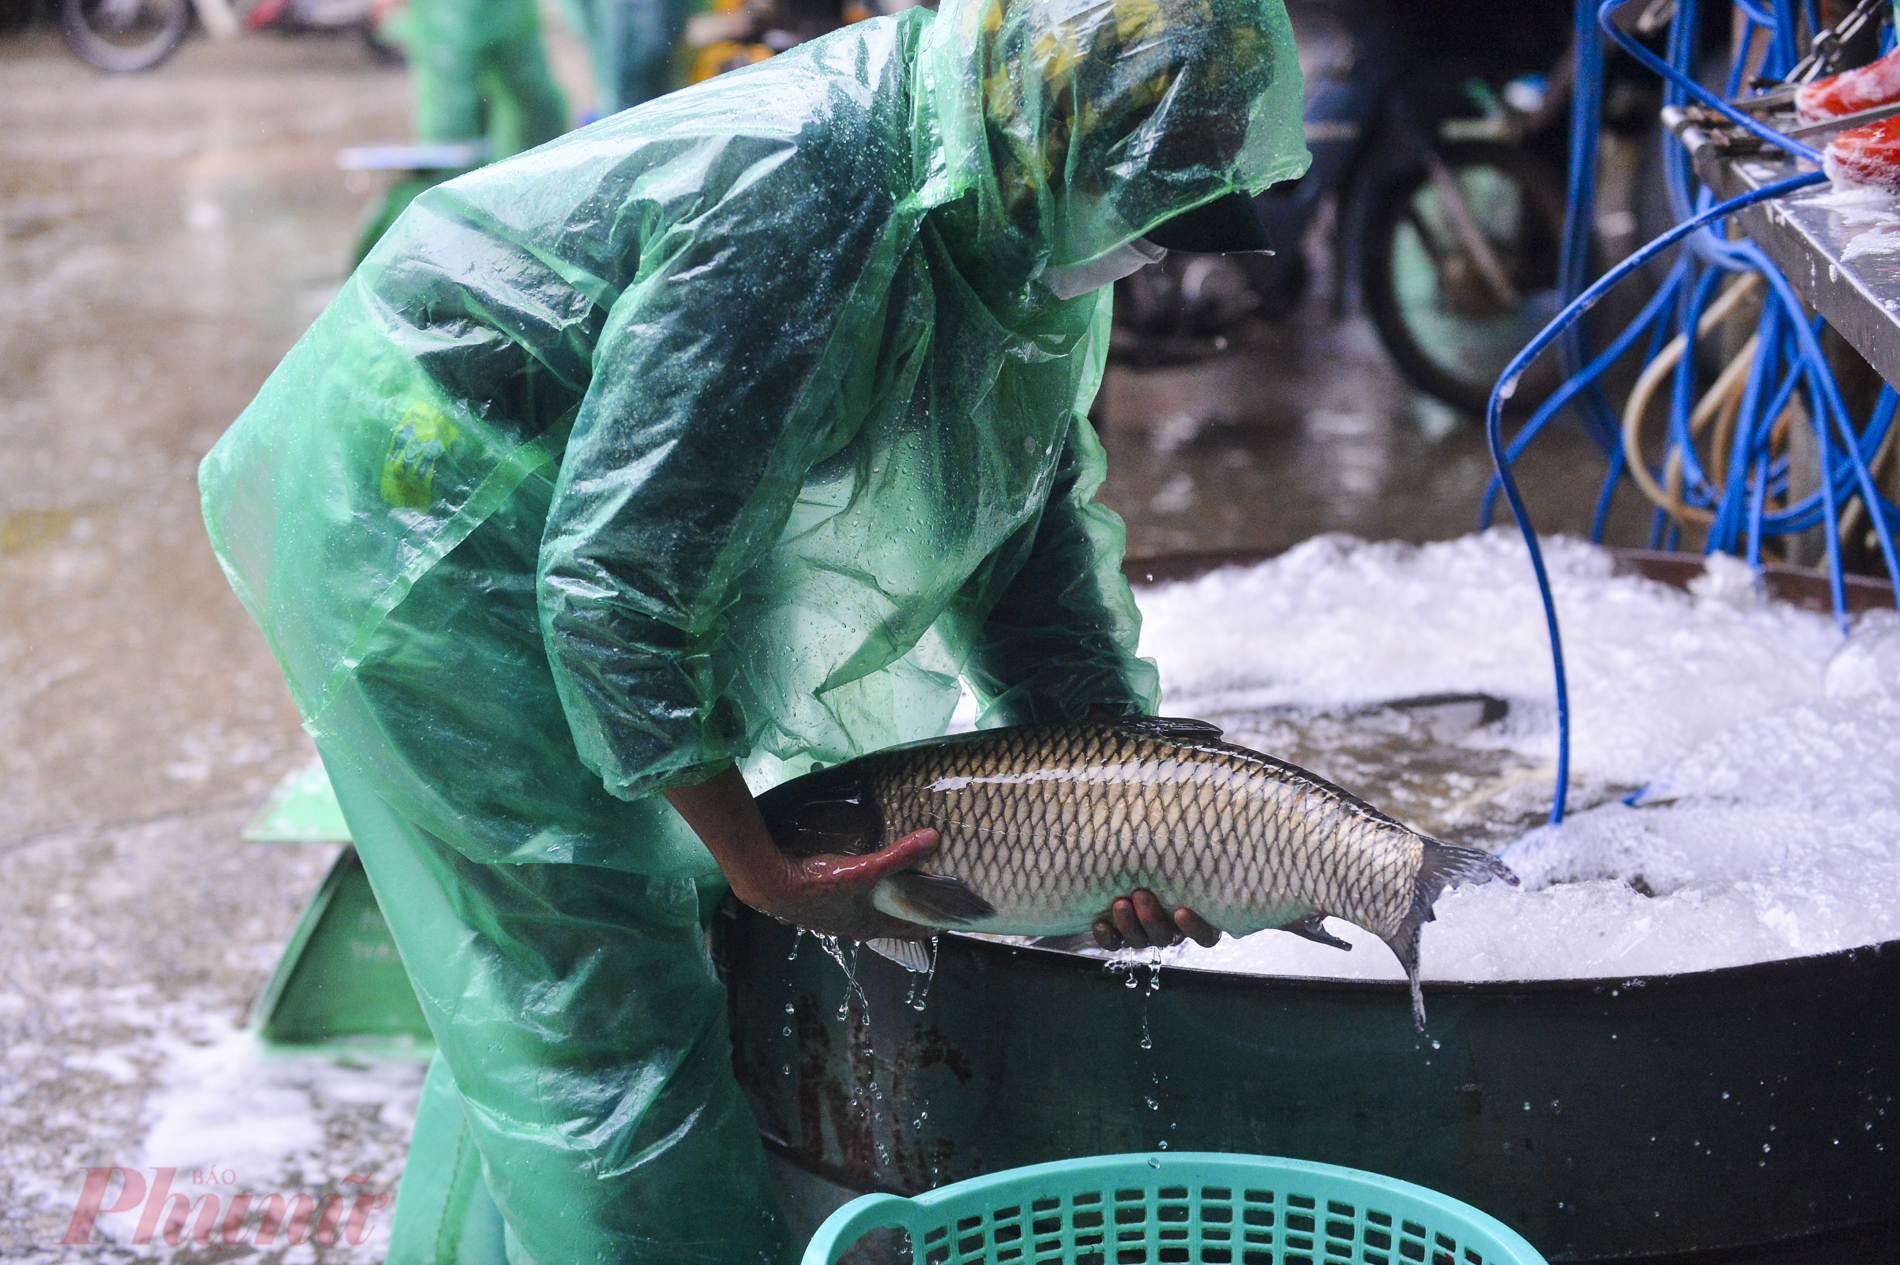 Trong cái giá lạnh dưới 10 độ của Hà Nội, chị Lê Thị Thanh vẫn đôi tay trần bắt từng con cá trong chậu nước để bỏ vào thùng xe cho khách mang đi.